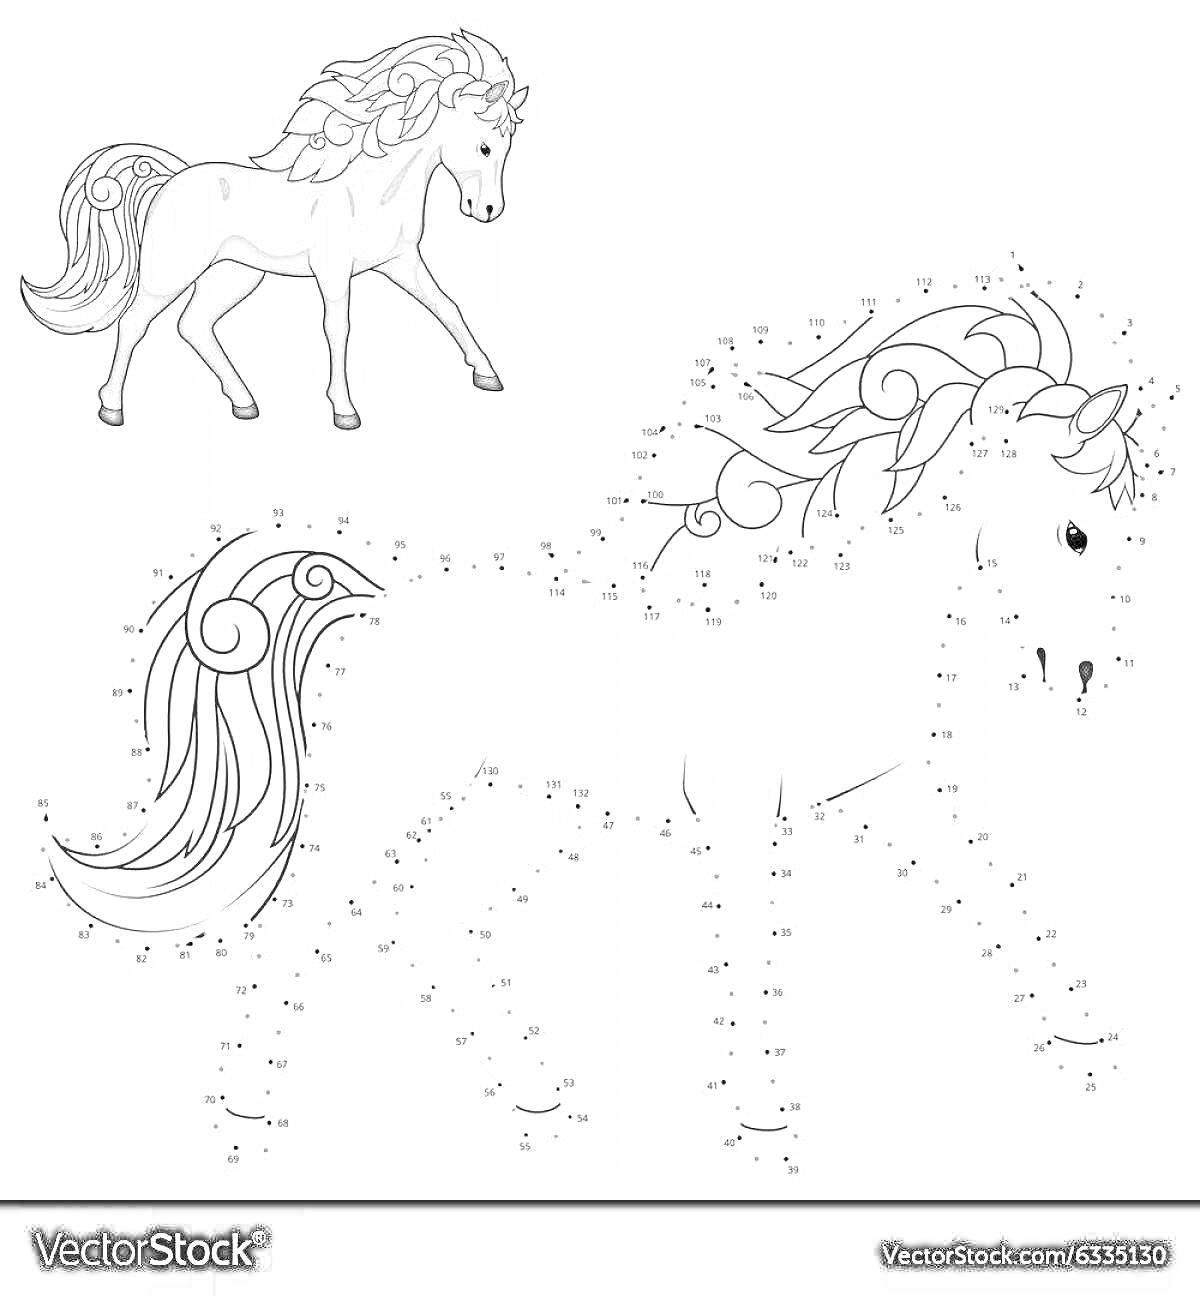 Раскраска Раскраска по цифрам: Лошадь, детализированный рисунок, соединение точек, законченное изображение лошади, развивающая активность